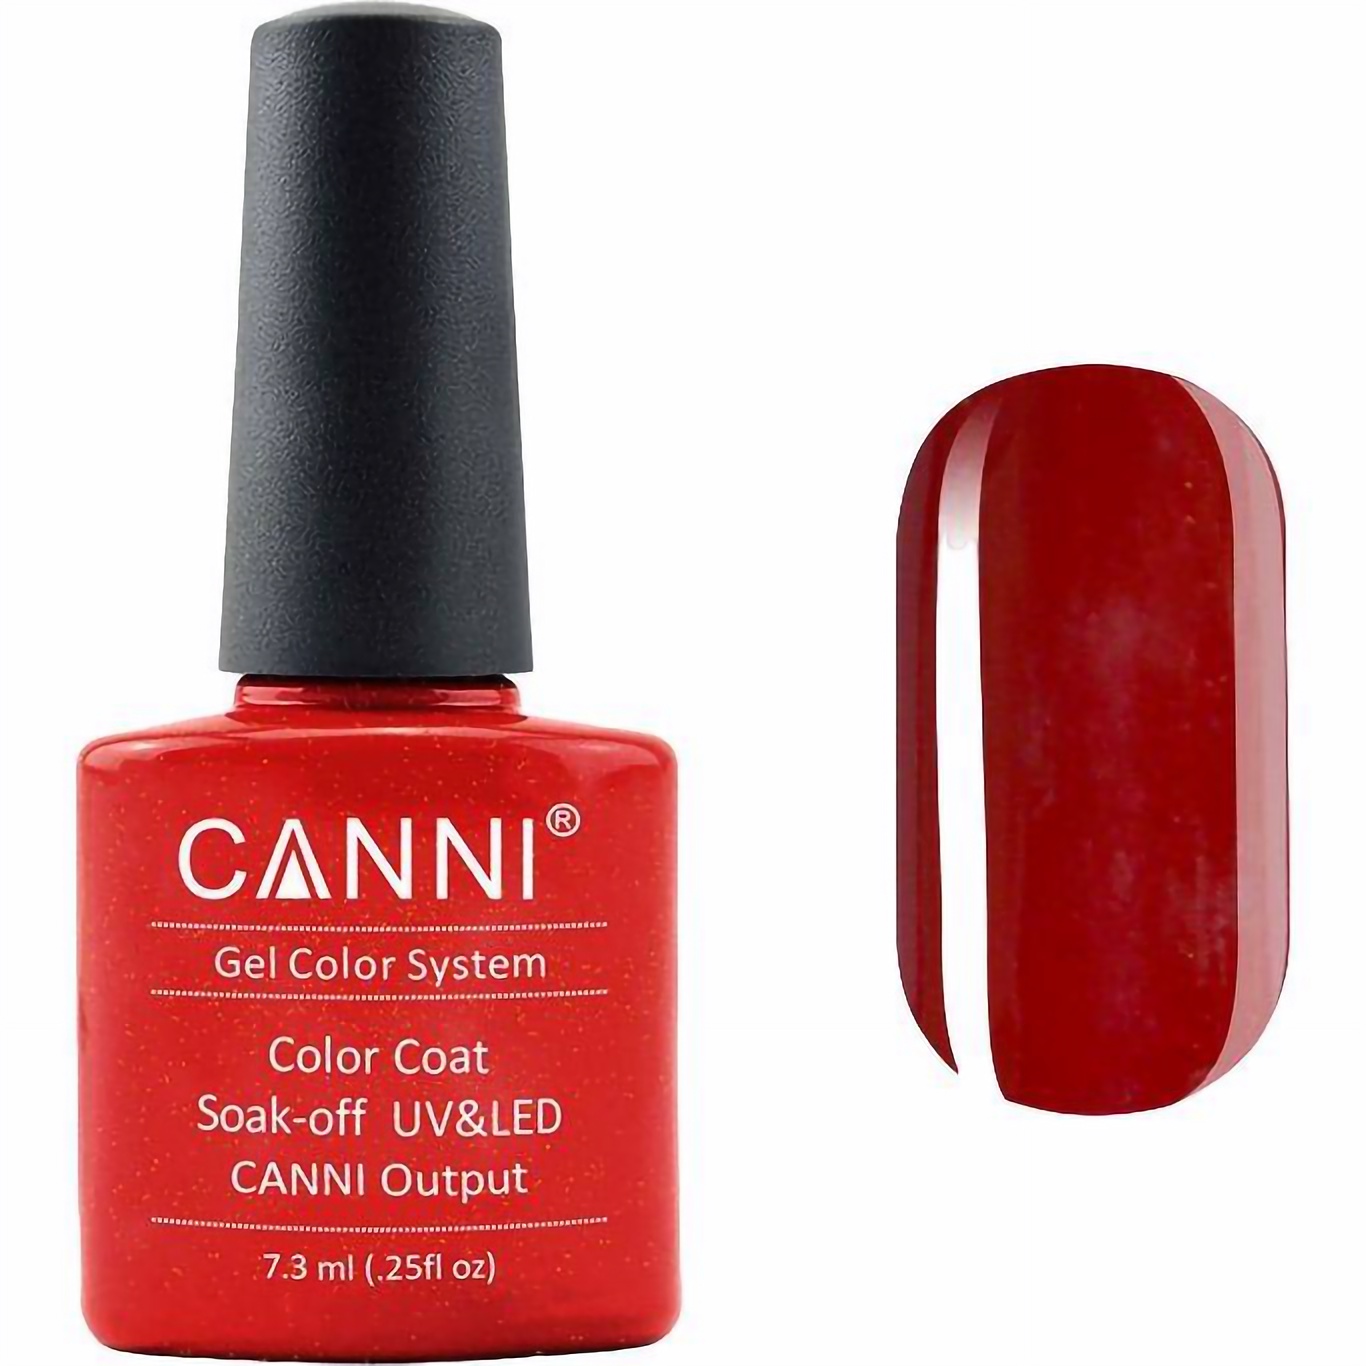 Гель-лак Canni Color Coat Soak-off UV&LED 210 кроваво-красный с шиммером 7.3 мл - фото 1